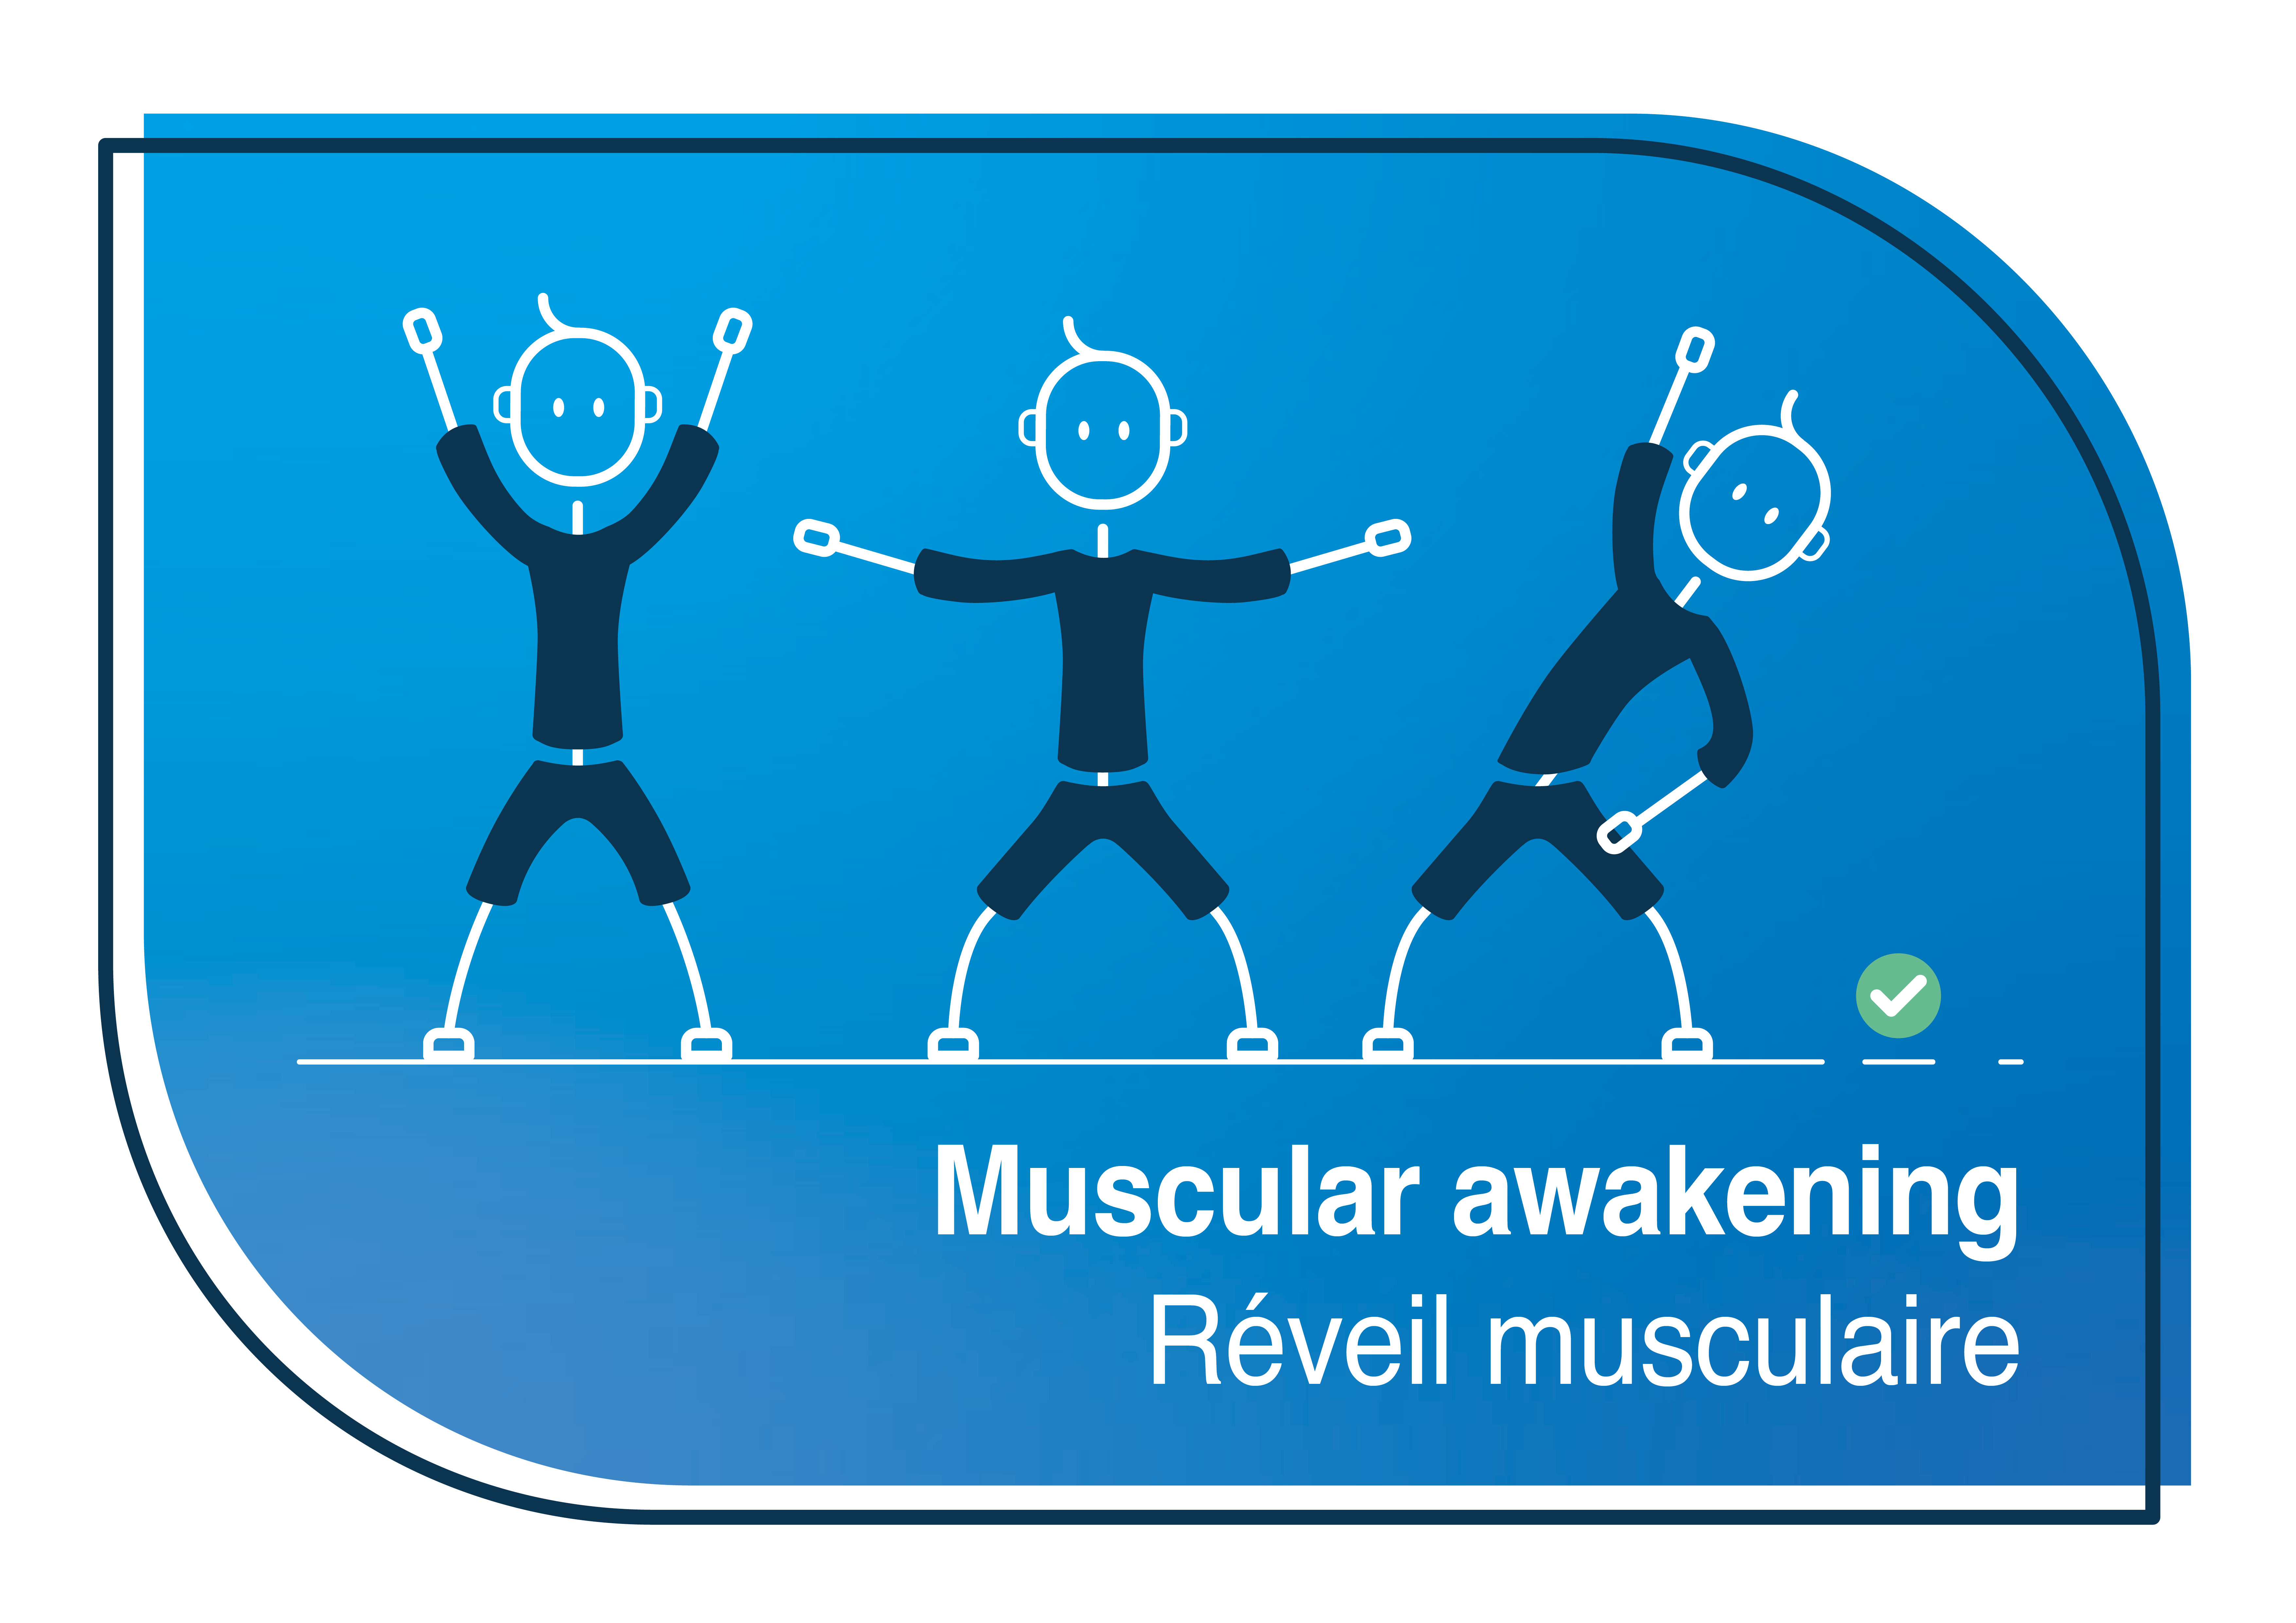 Muscular awakening